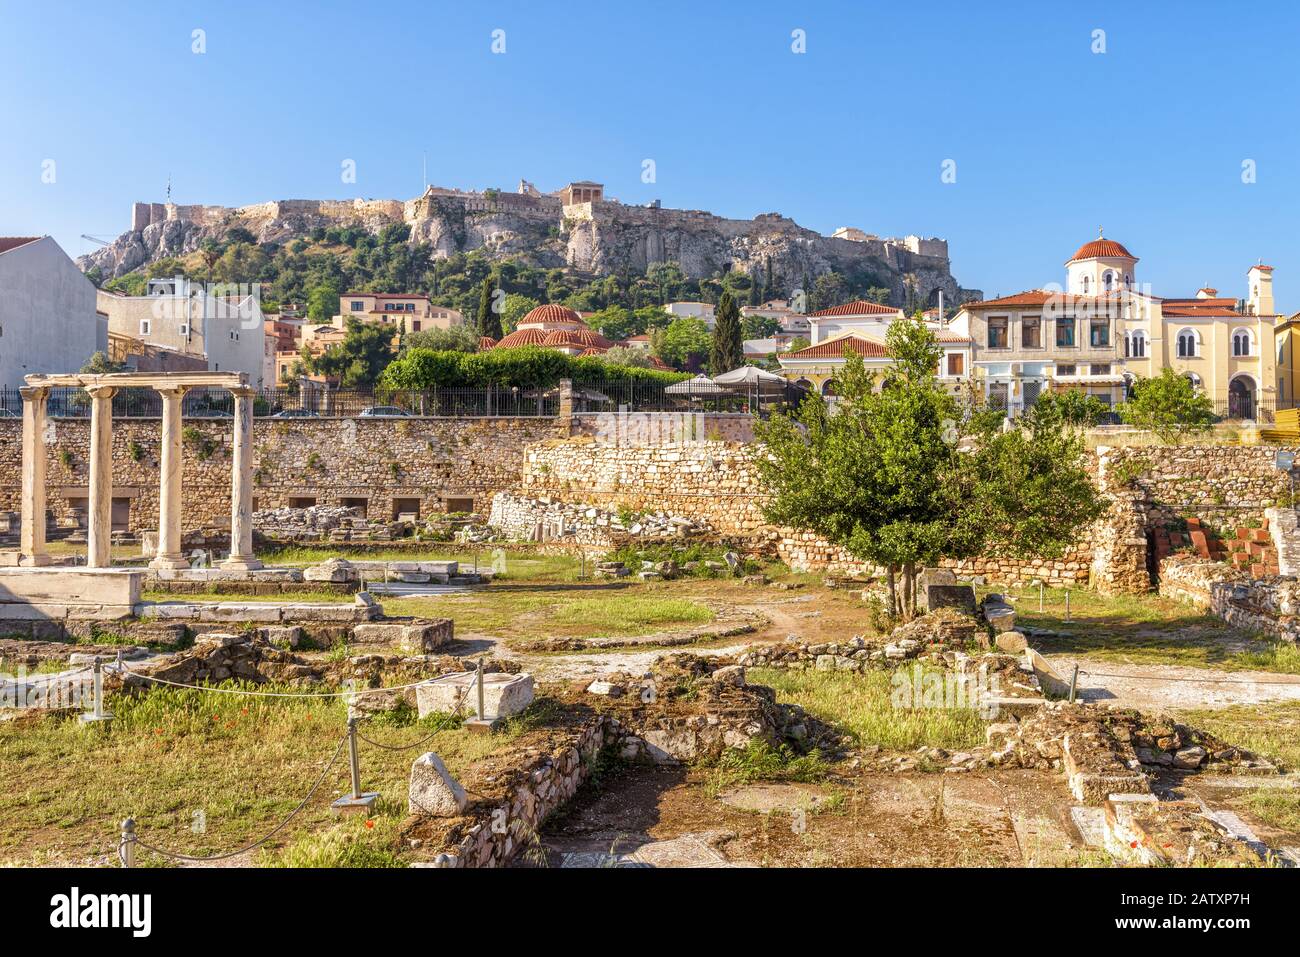 Hadriansbibliothek mit Blick auf die Akropolis von Athen, Griechenland. Es ist ein berühmtes Wahrzeichen Athens. Panorama der Antiken griechischen Ruinen im Zentrum von Athen. S Stockfoto